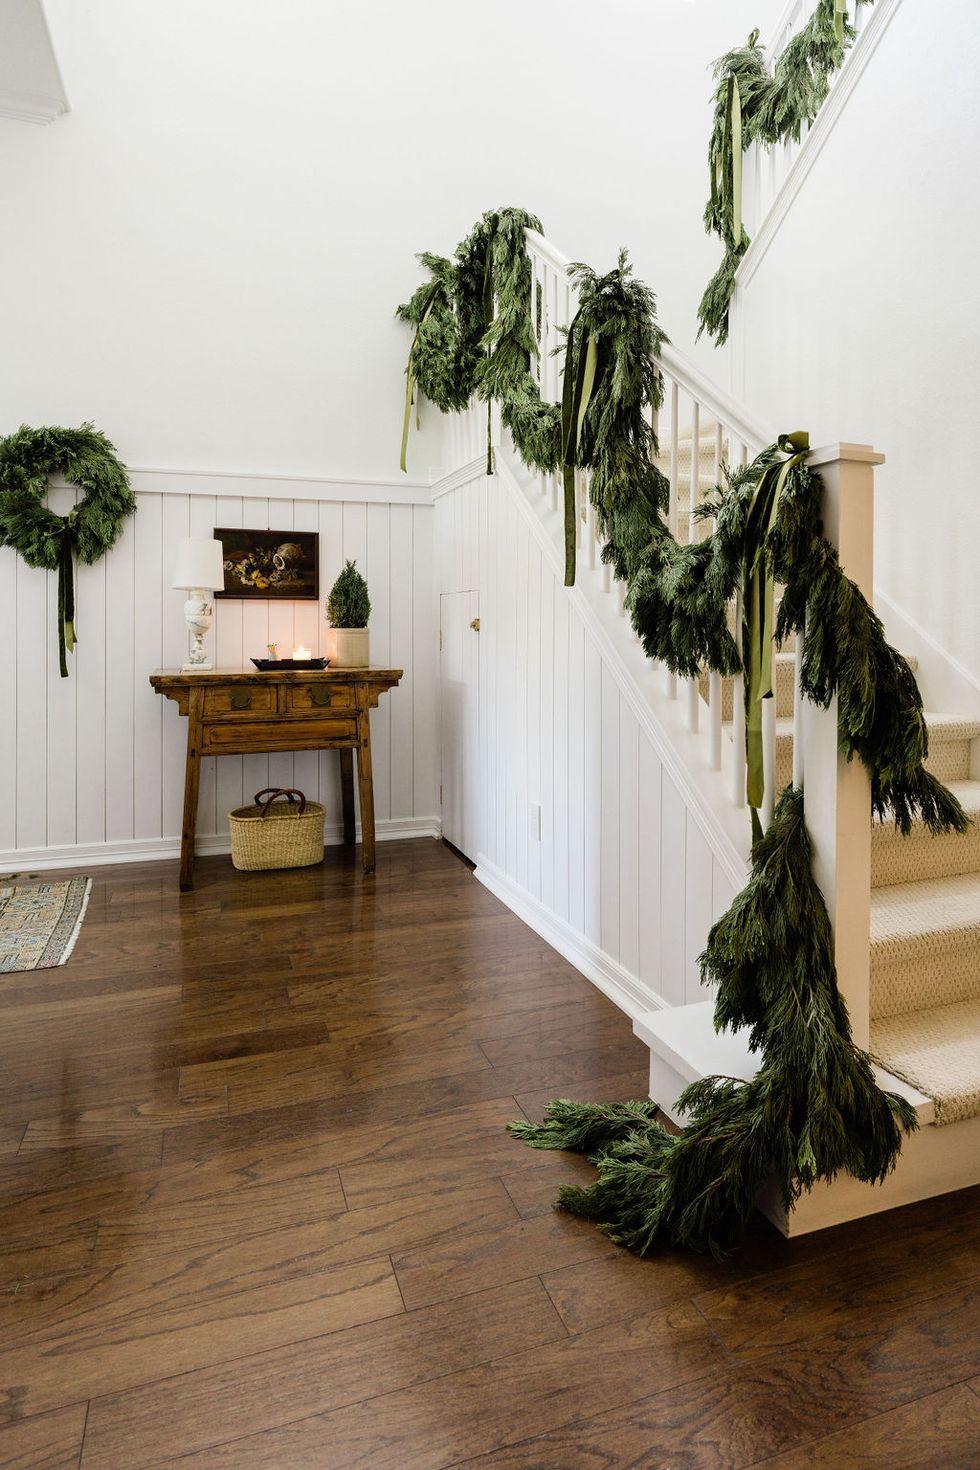 Garland hung on the banister with velvet ribbon  Velvet christmas bow,  Magnolia leaf garland, Christmas banister